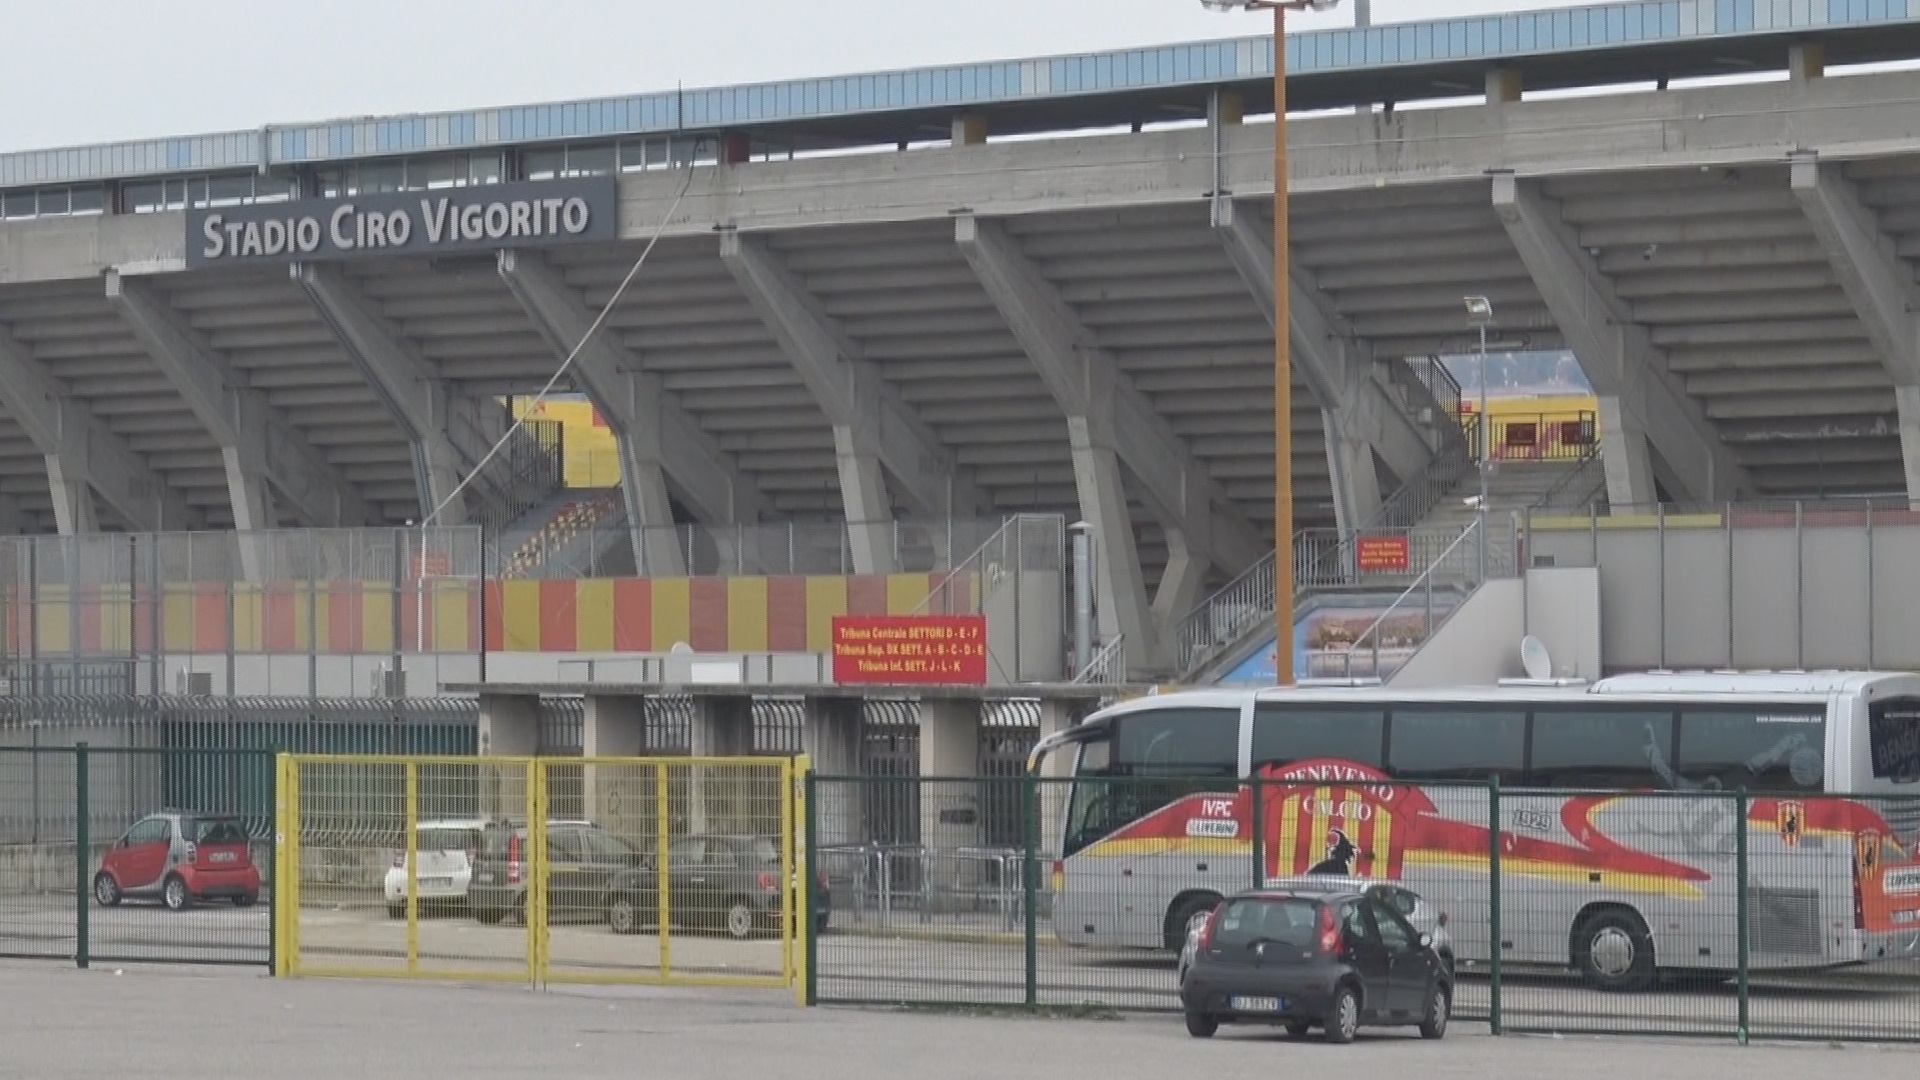 Benevento, stadio “Vigorito”: ok alla capienza di 14461 spettatori